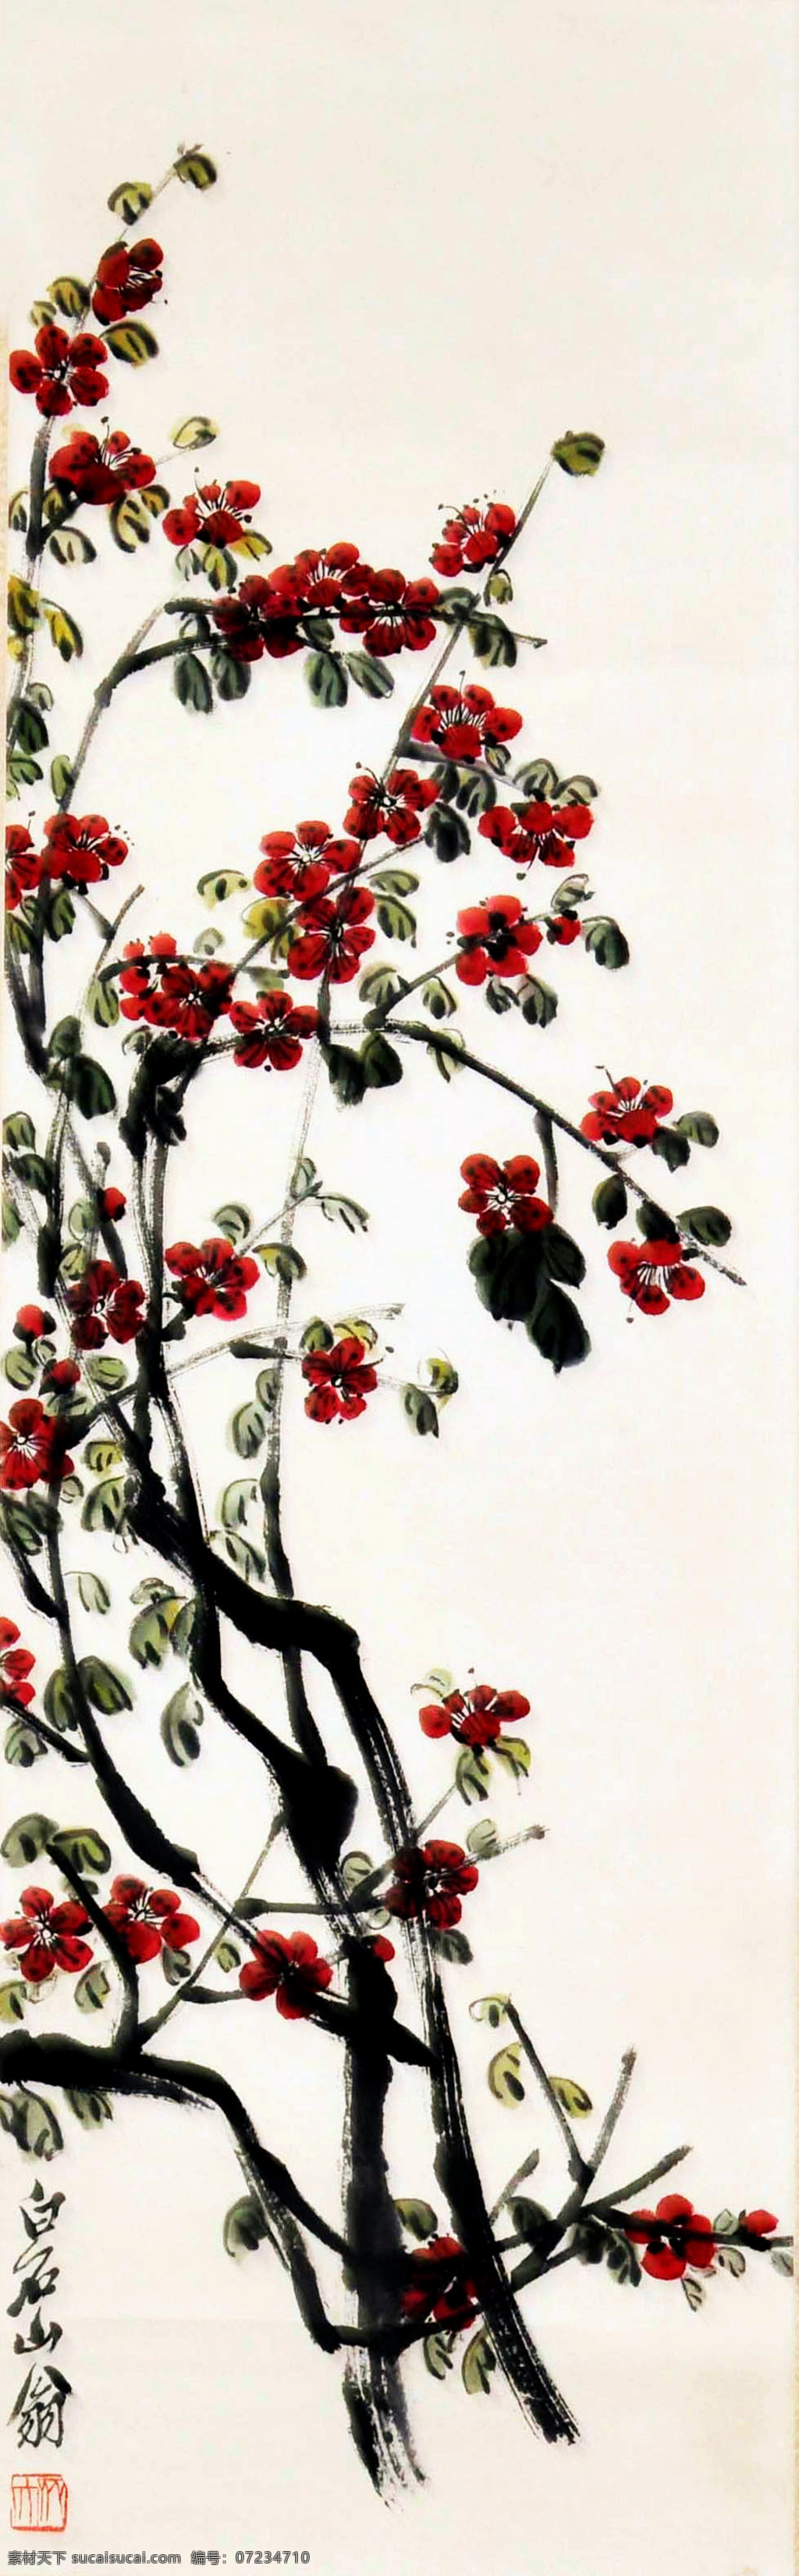 齐白石 梅花 写意 水墨画 国画 中国画 传统画 名家 绘画 艺术 文化艺术 绘画书法